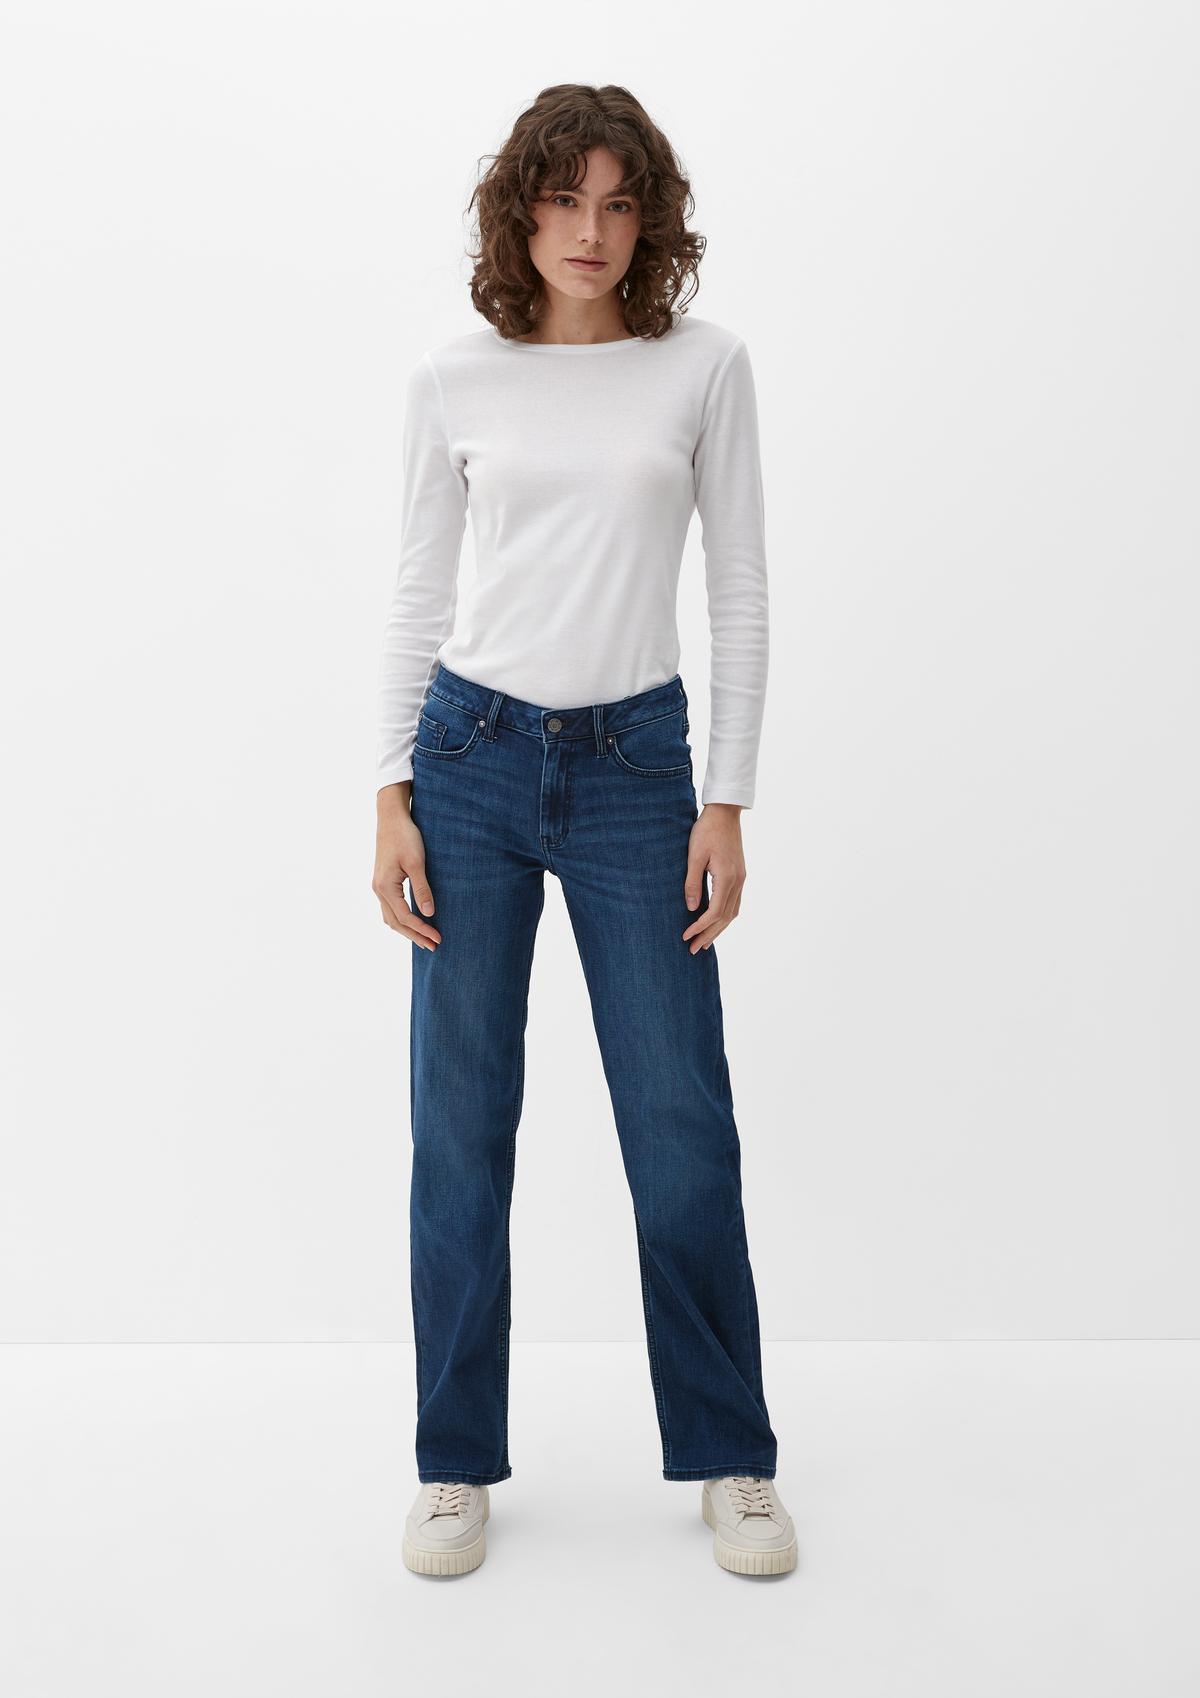 Regular jeans Karolin / regular fit / mid rise / straight leg